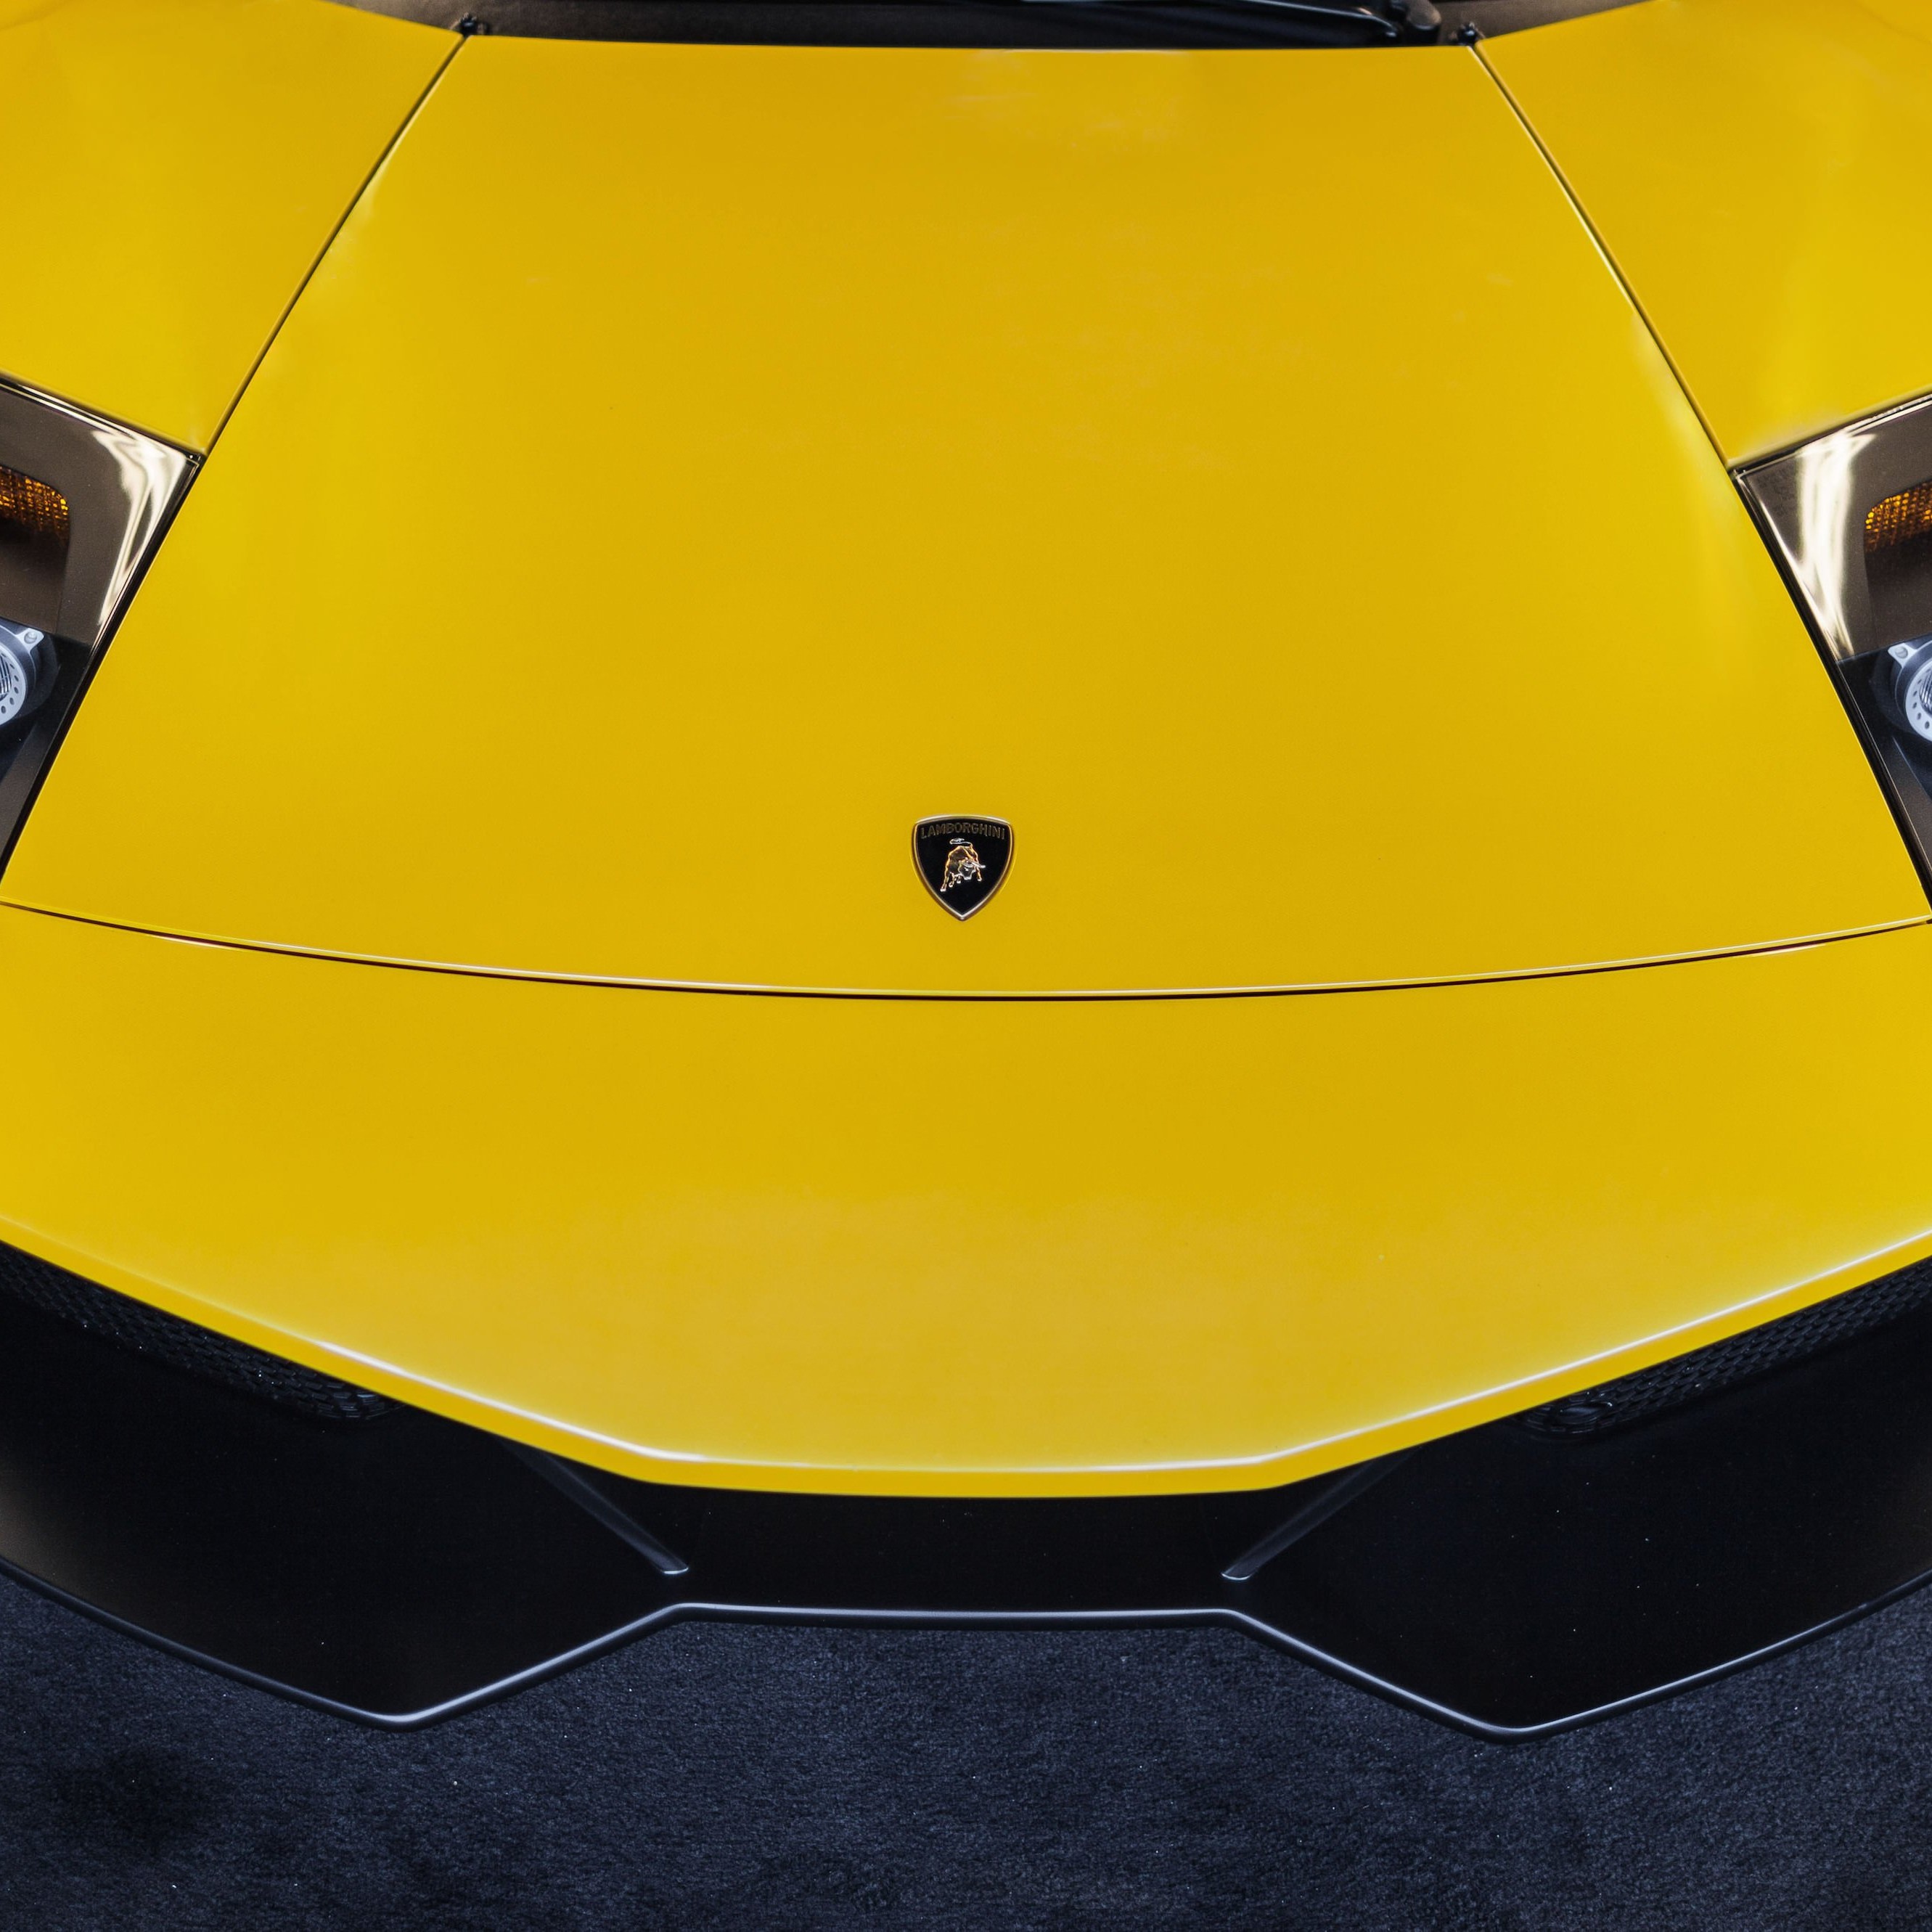 Lamborghini Murcielago LP670 Front Wallpaper for Apple iPhone 6 Plus